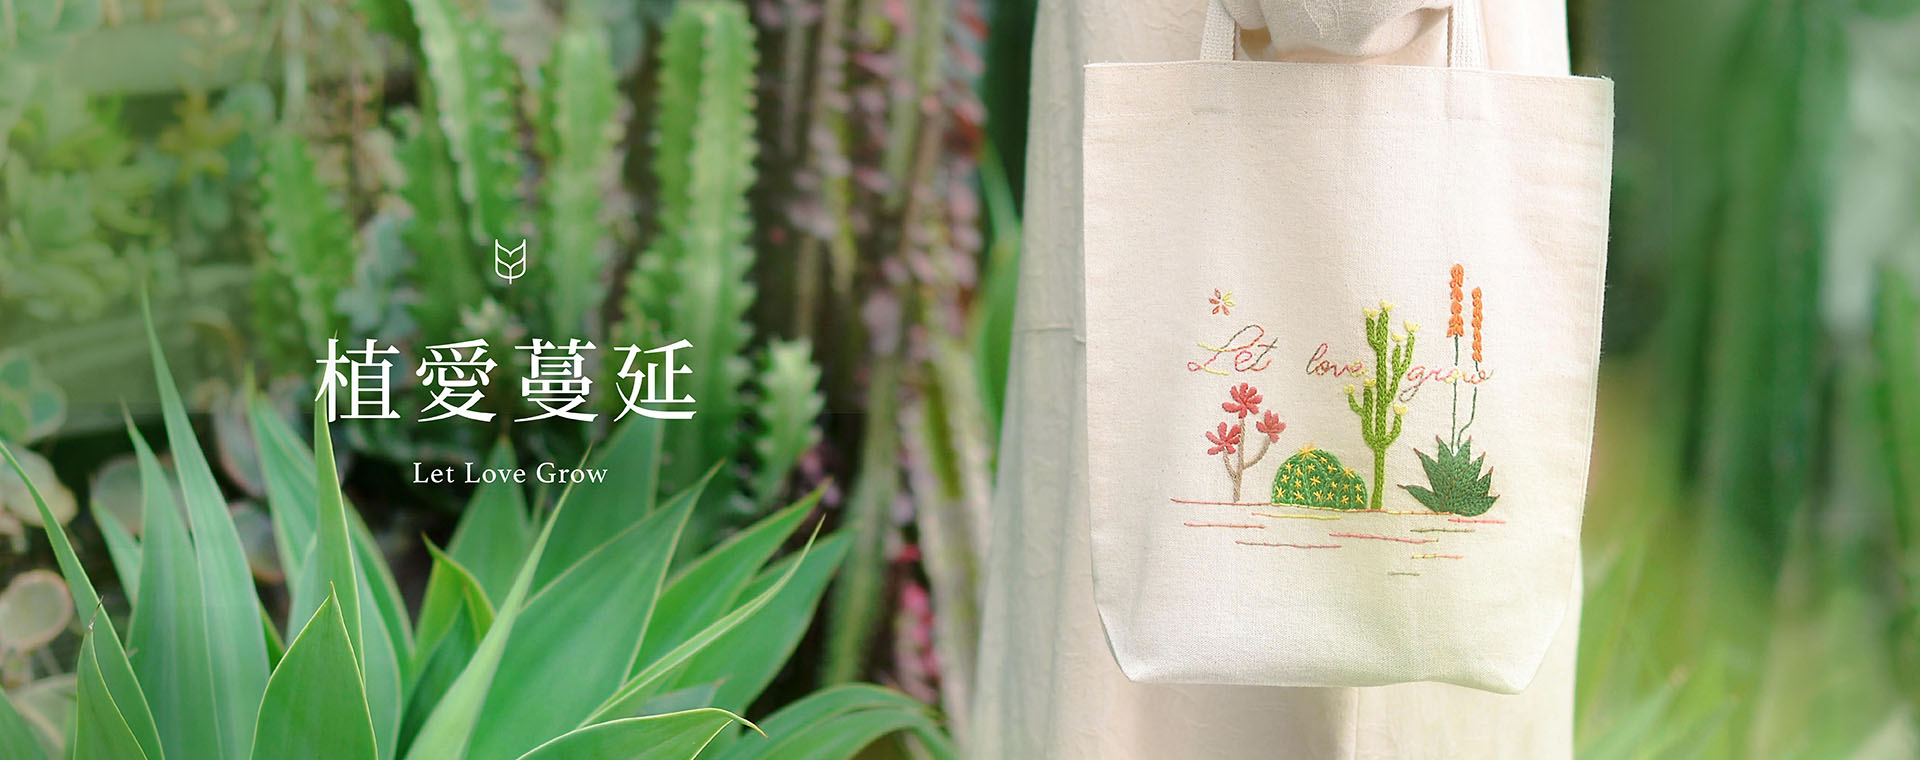 台北刺繡布袋課程